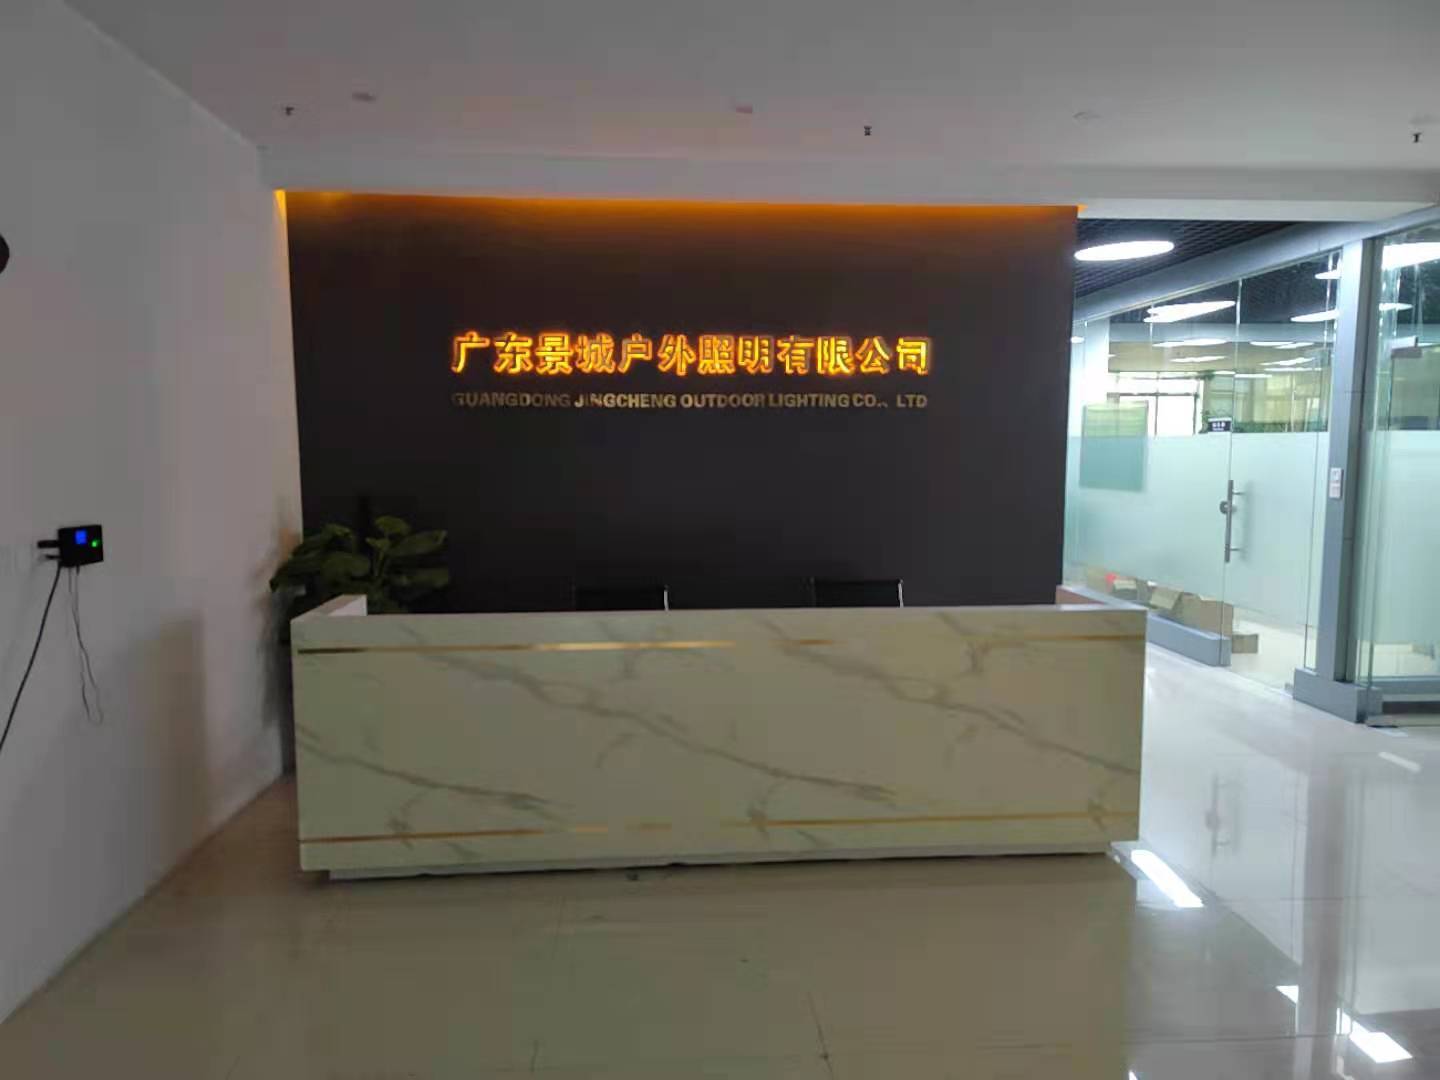   Guangdong Jingcheng Outdoor Lighting Co., Ltd